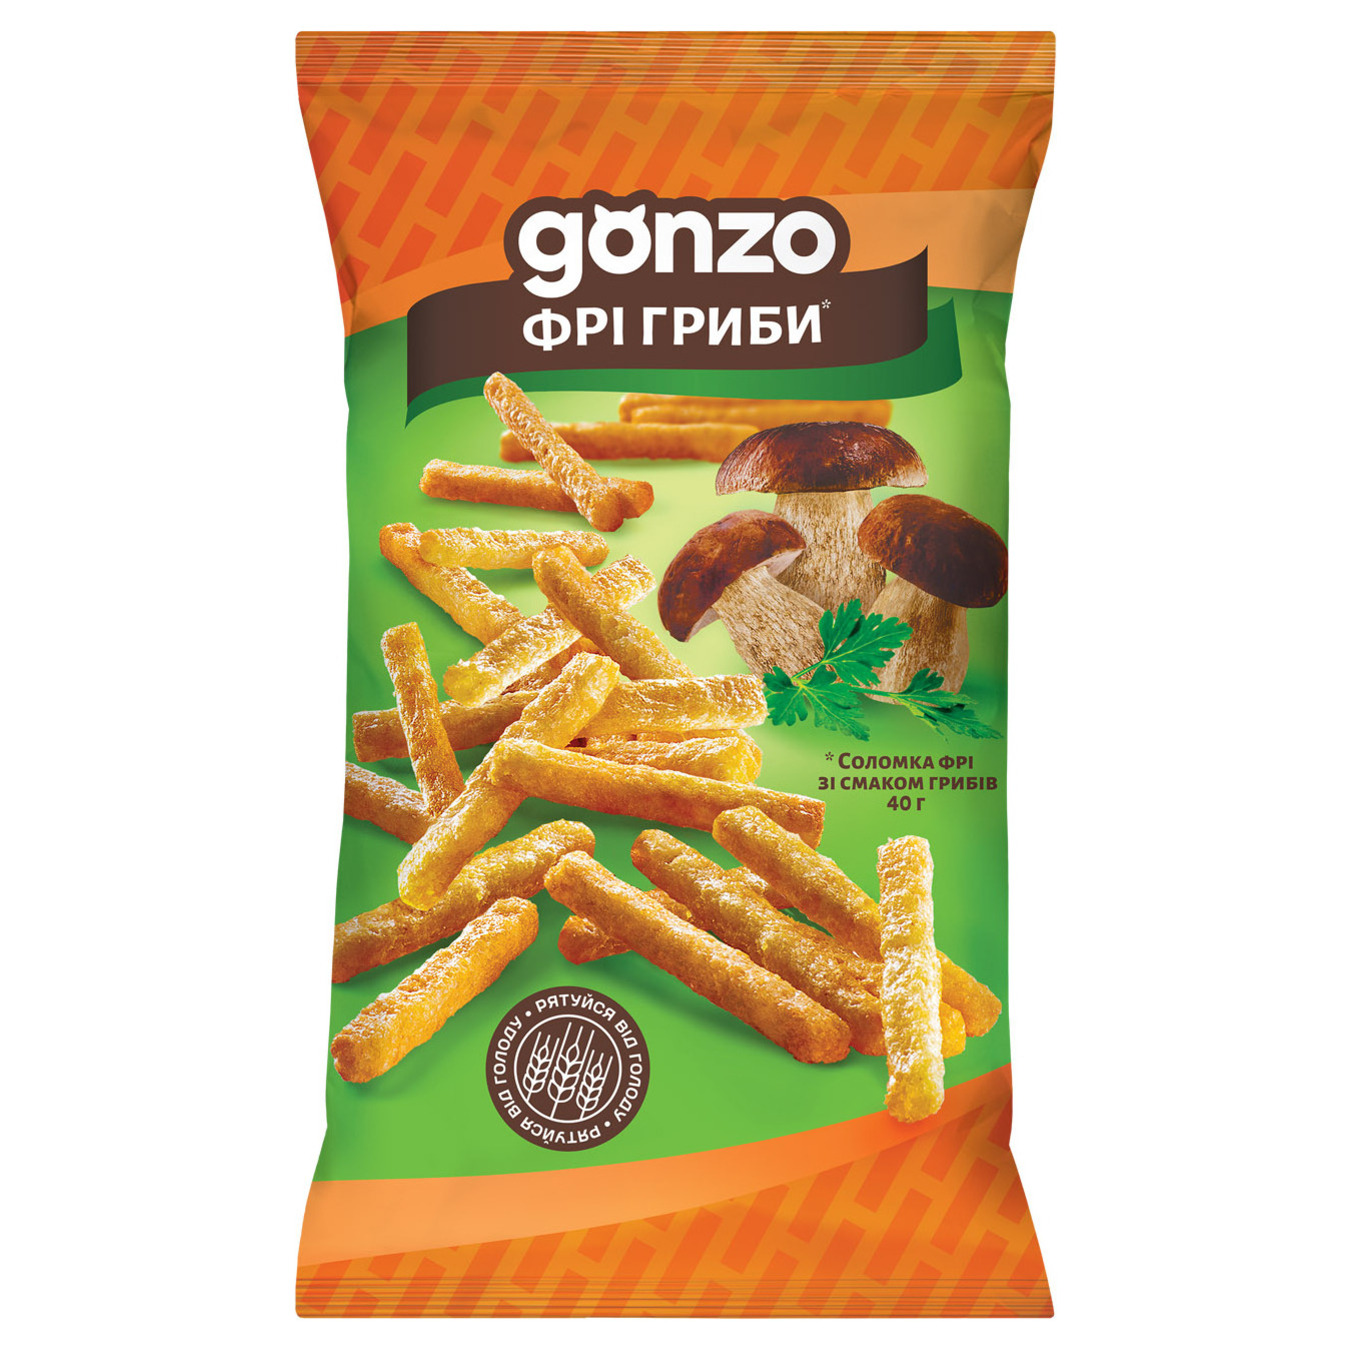 Соломка фри Gonzo со вкусом грибов 40г